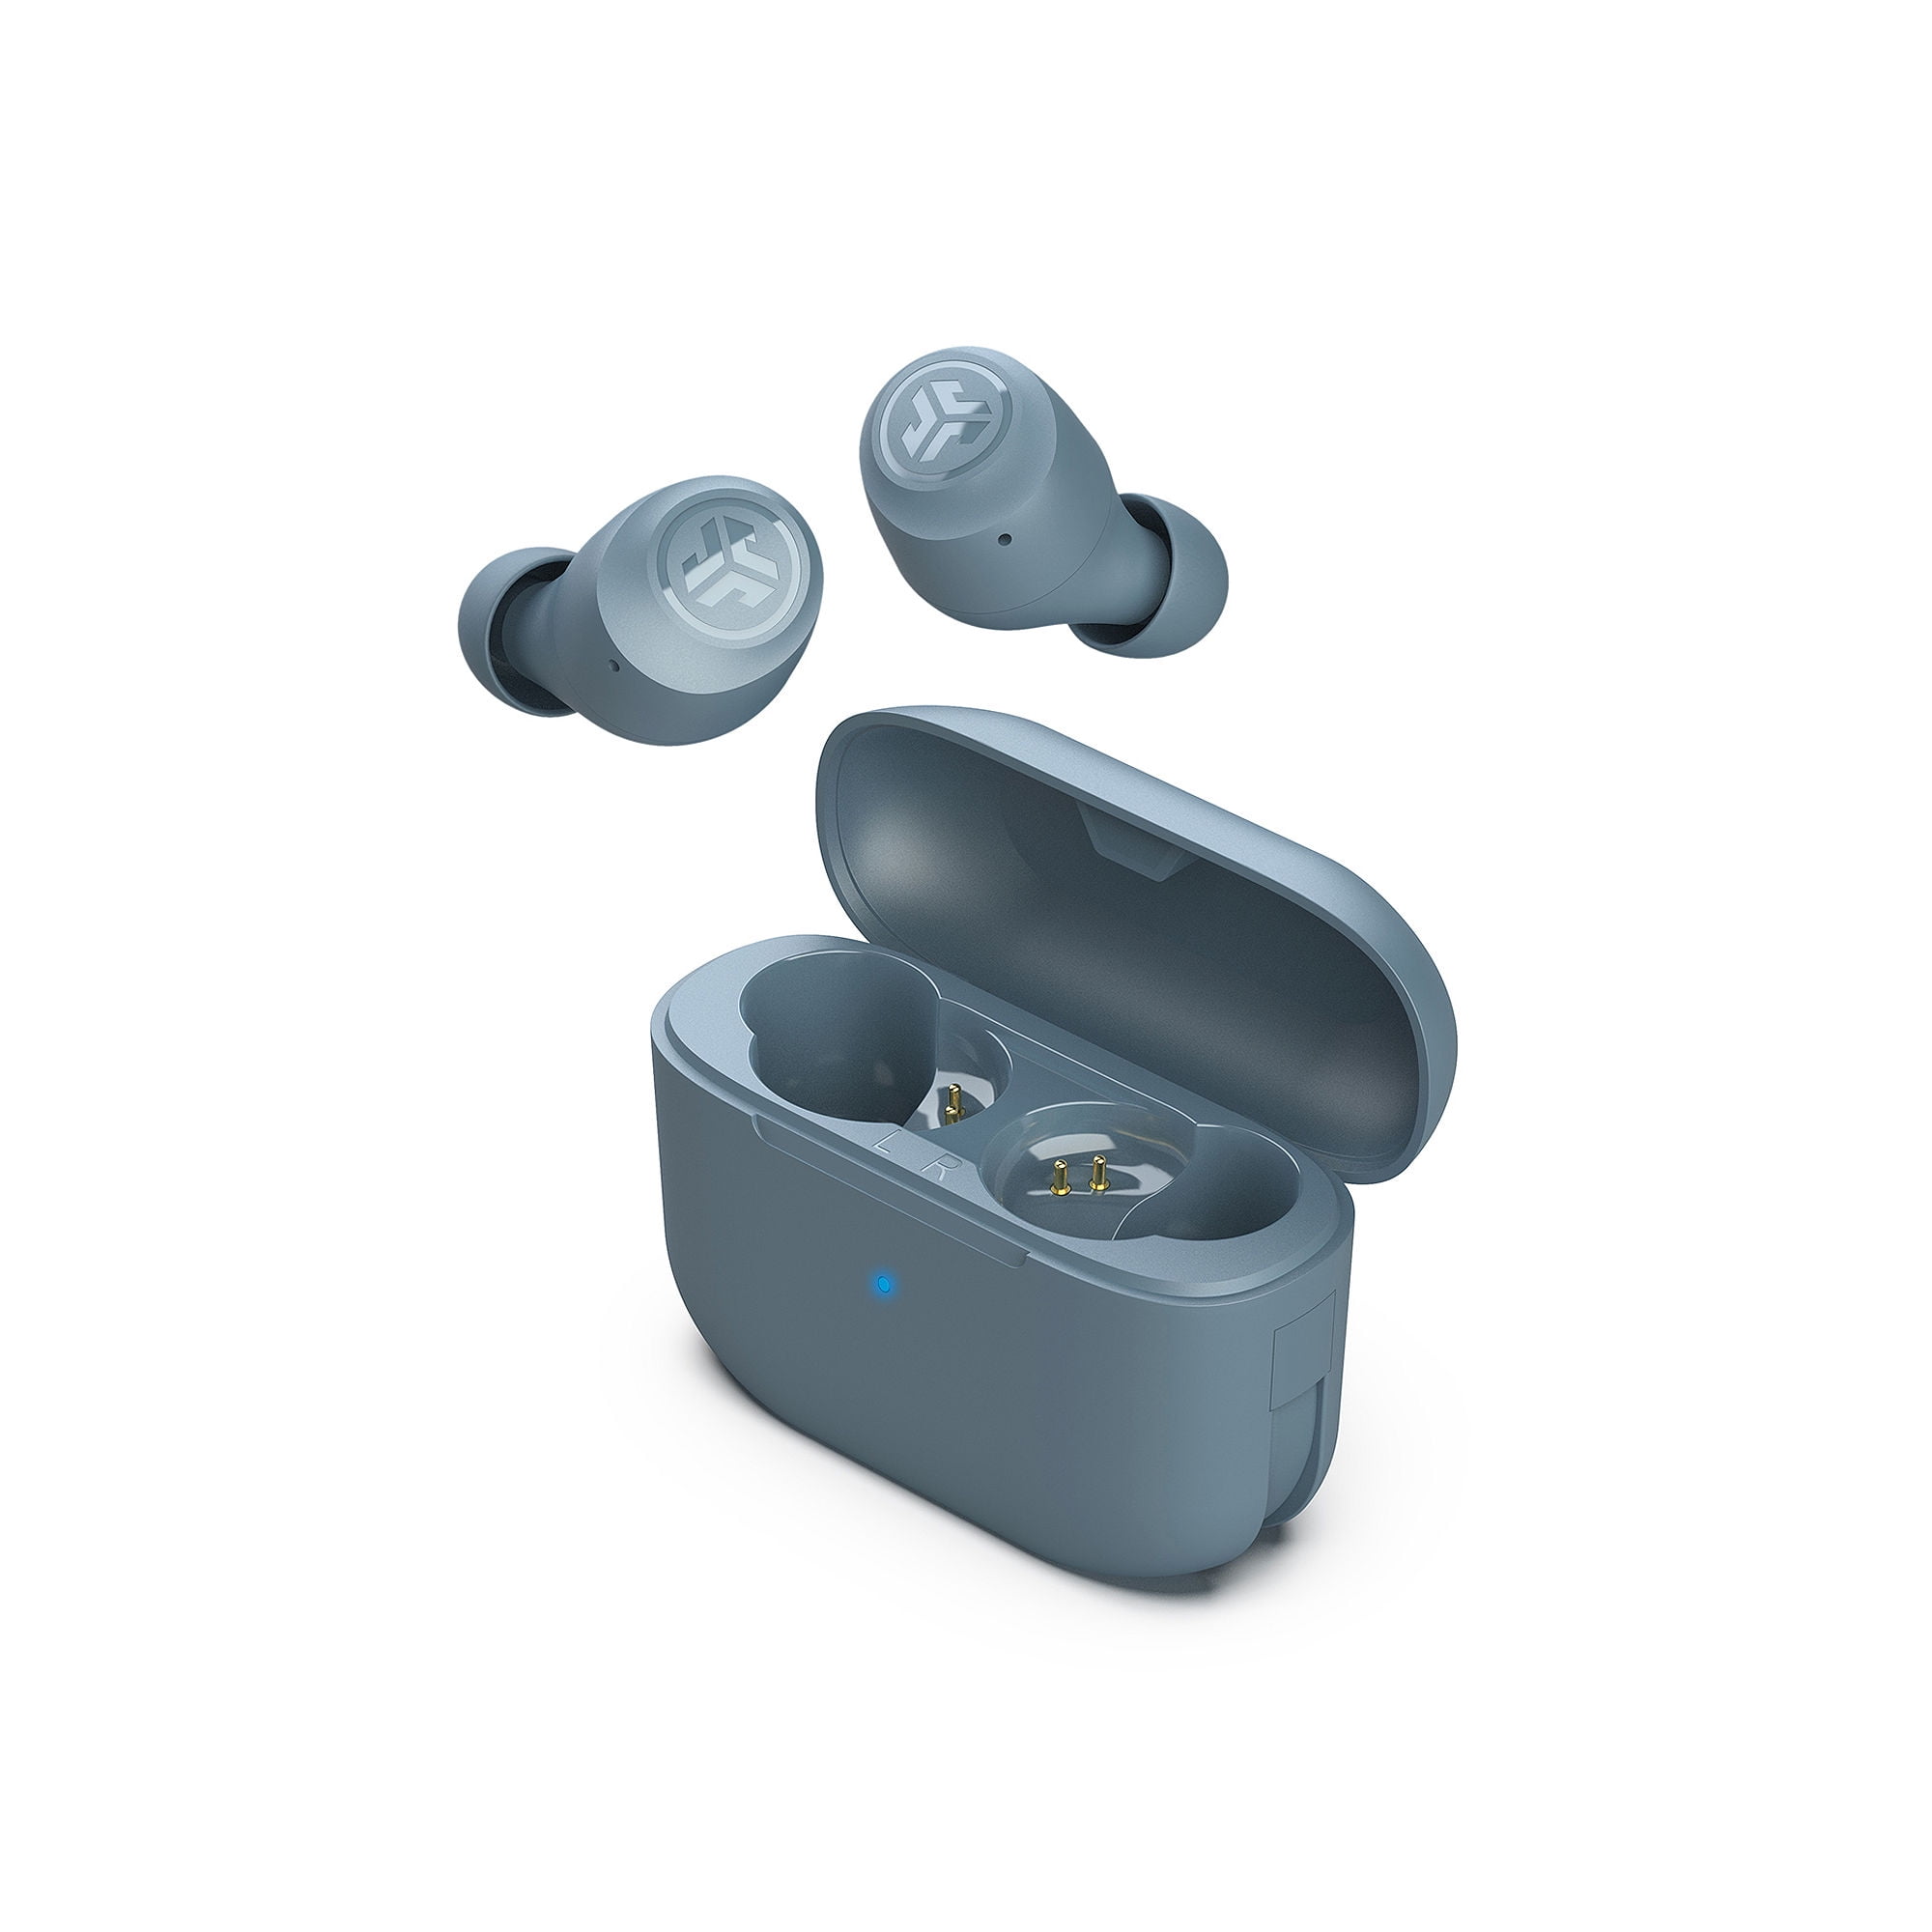 JLab GO Air POP True Wireless In-Ear Headphones - Purple